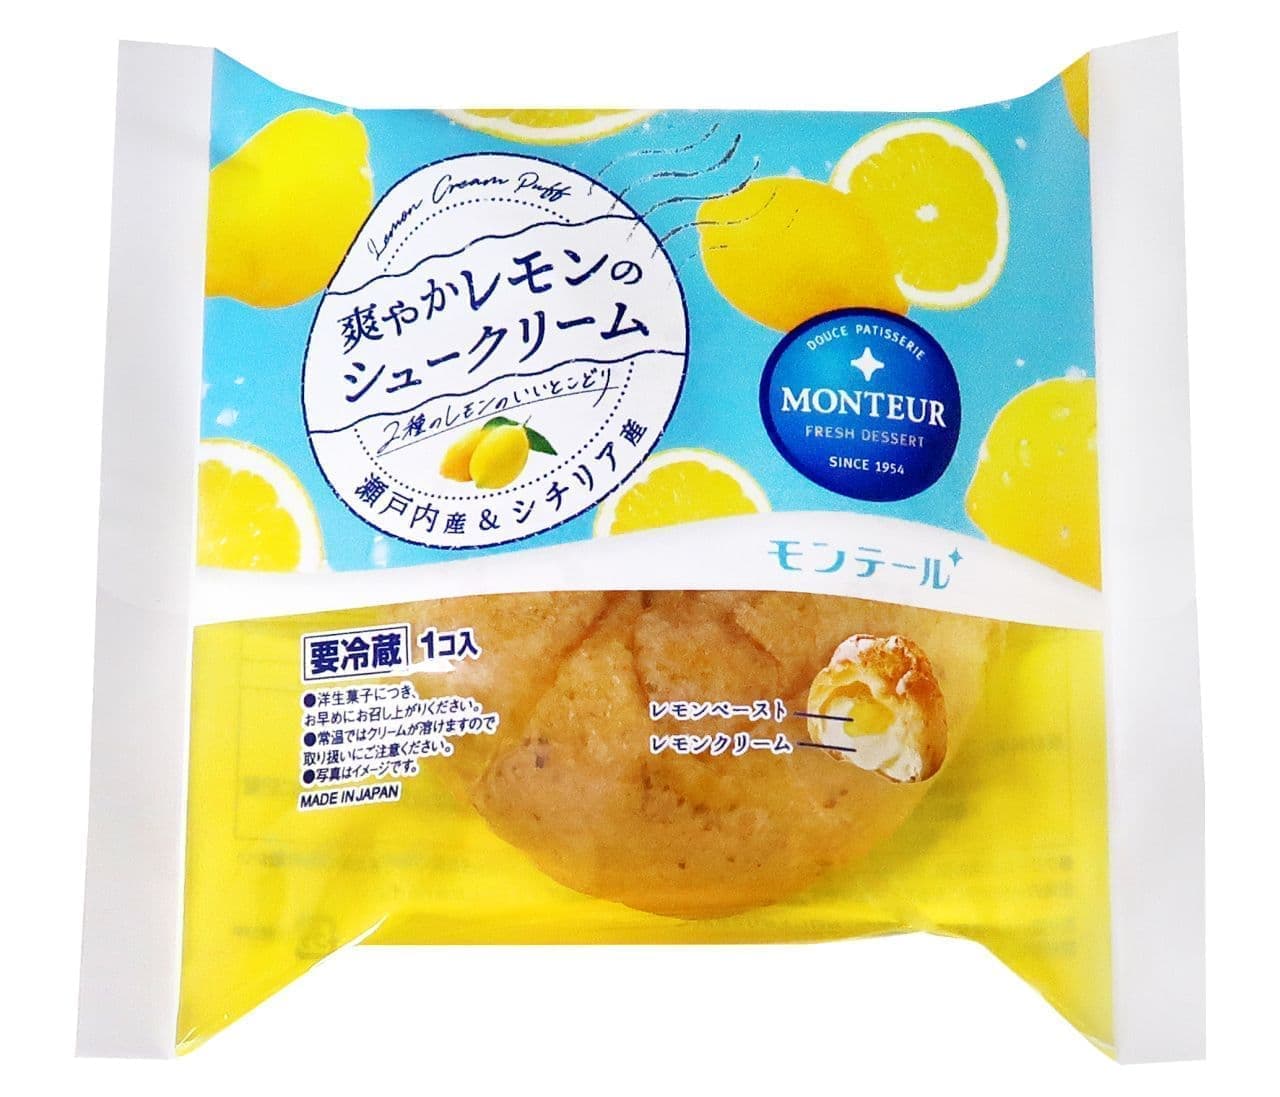 MONTAIR "Refreshing Lemon Cream Puff